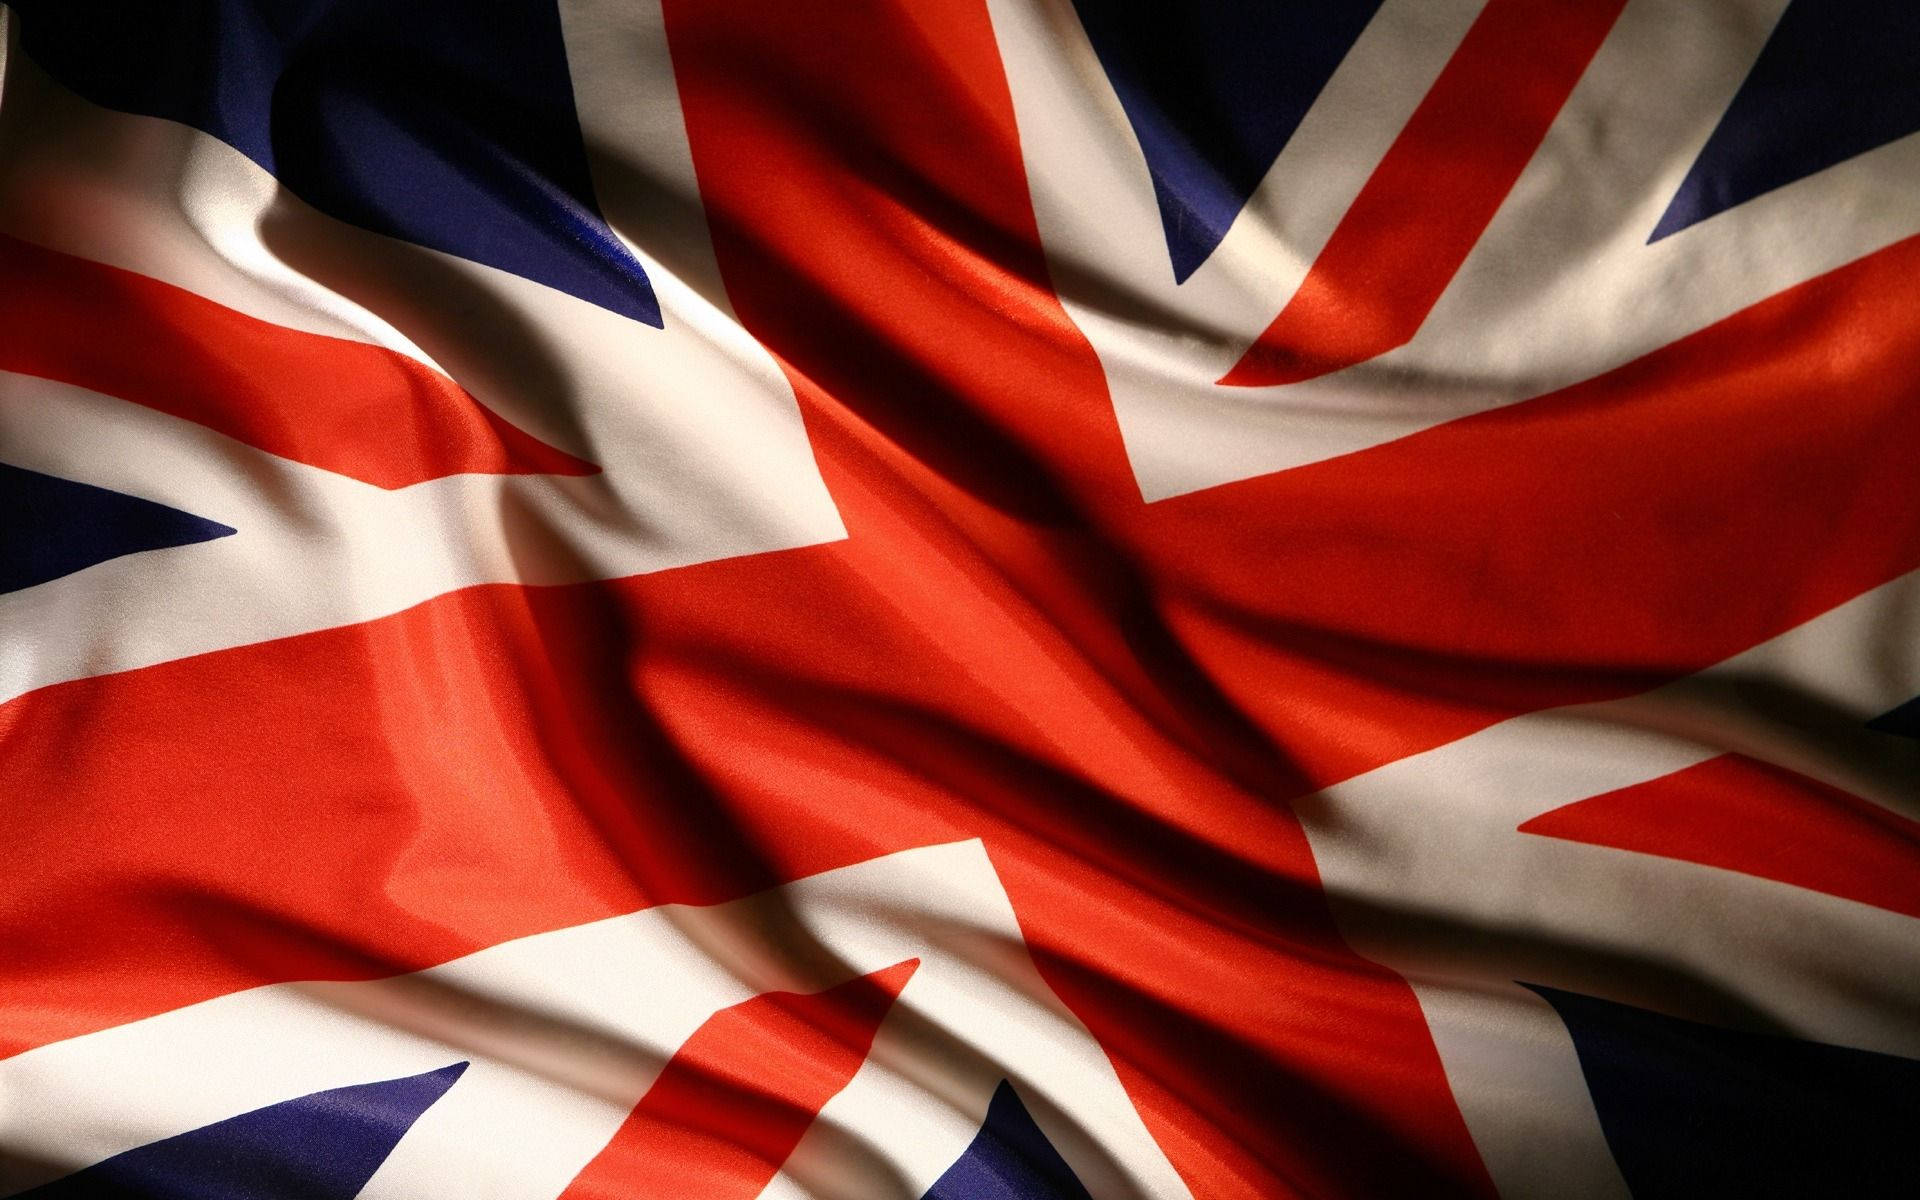 Cờ Liên hiệp Anh là một biểu tượng lịch sử quan trọng, tượng trưng cho một quốc gia giàu truyền thống và văn hóa. Hình ảnh của lá cờ được trưng bày trong hầu hết những nơi quan trọng tại Vương quốc Anh. Hãy chiêm ngưỡng bức ảnh về cờ đất nước này để tìm hiểu thêm về lịch sử và văn hóa đa dạng của quốc gia này.